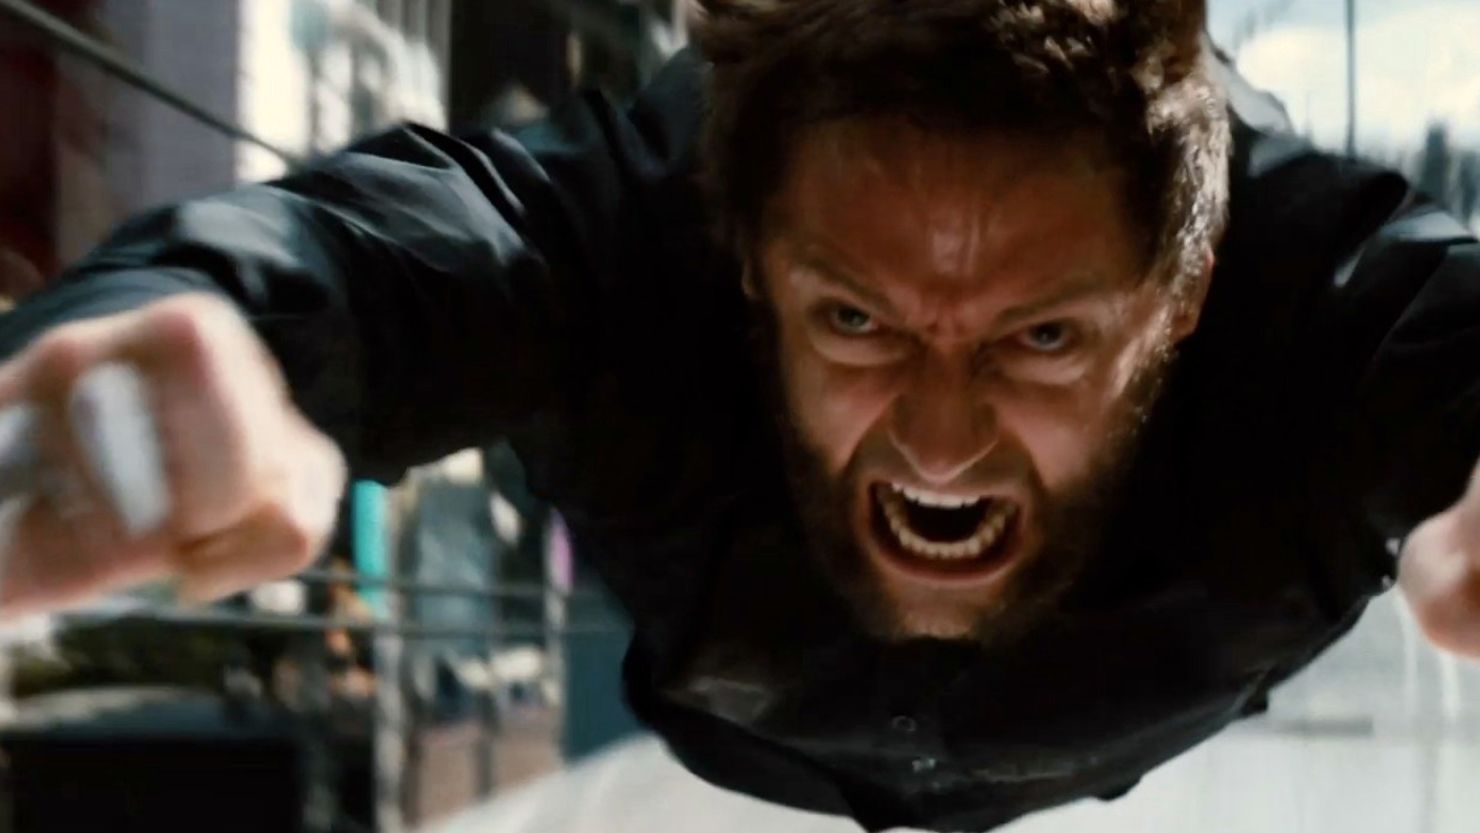 Hugh Jackman stars as Logan/Wolverine in "The Wolverine."
